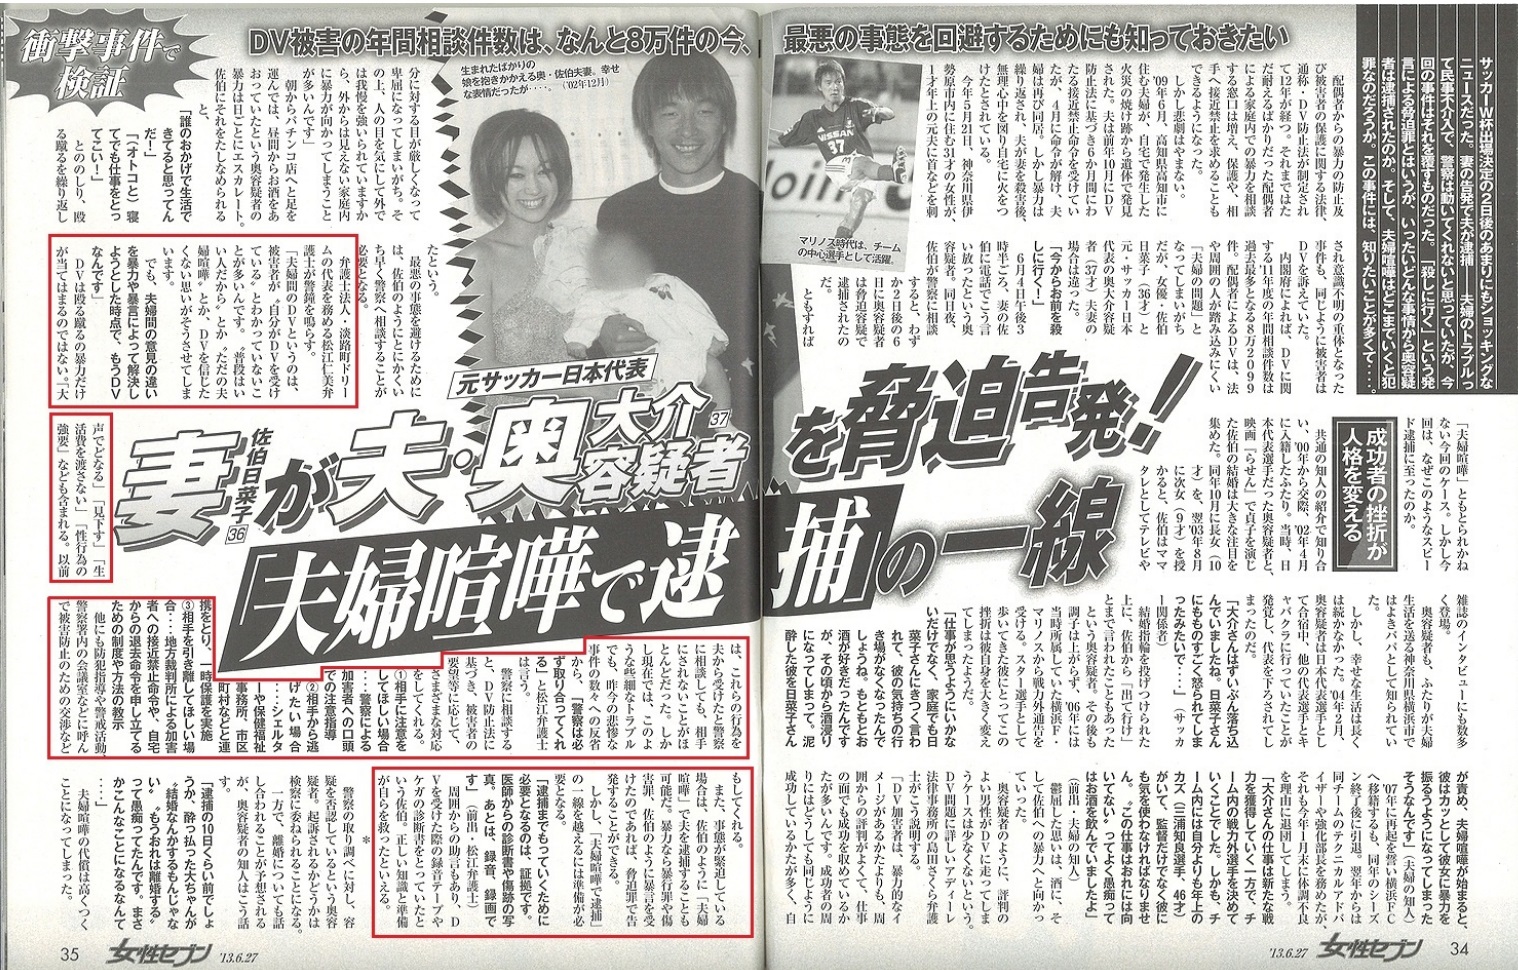 雑誌「女性セブン」に、離婚における慰謝料などの問題などについて代表弁護士松江仁美が取材を受け、コメントを提供しました。